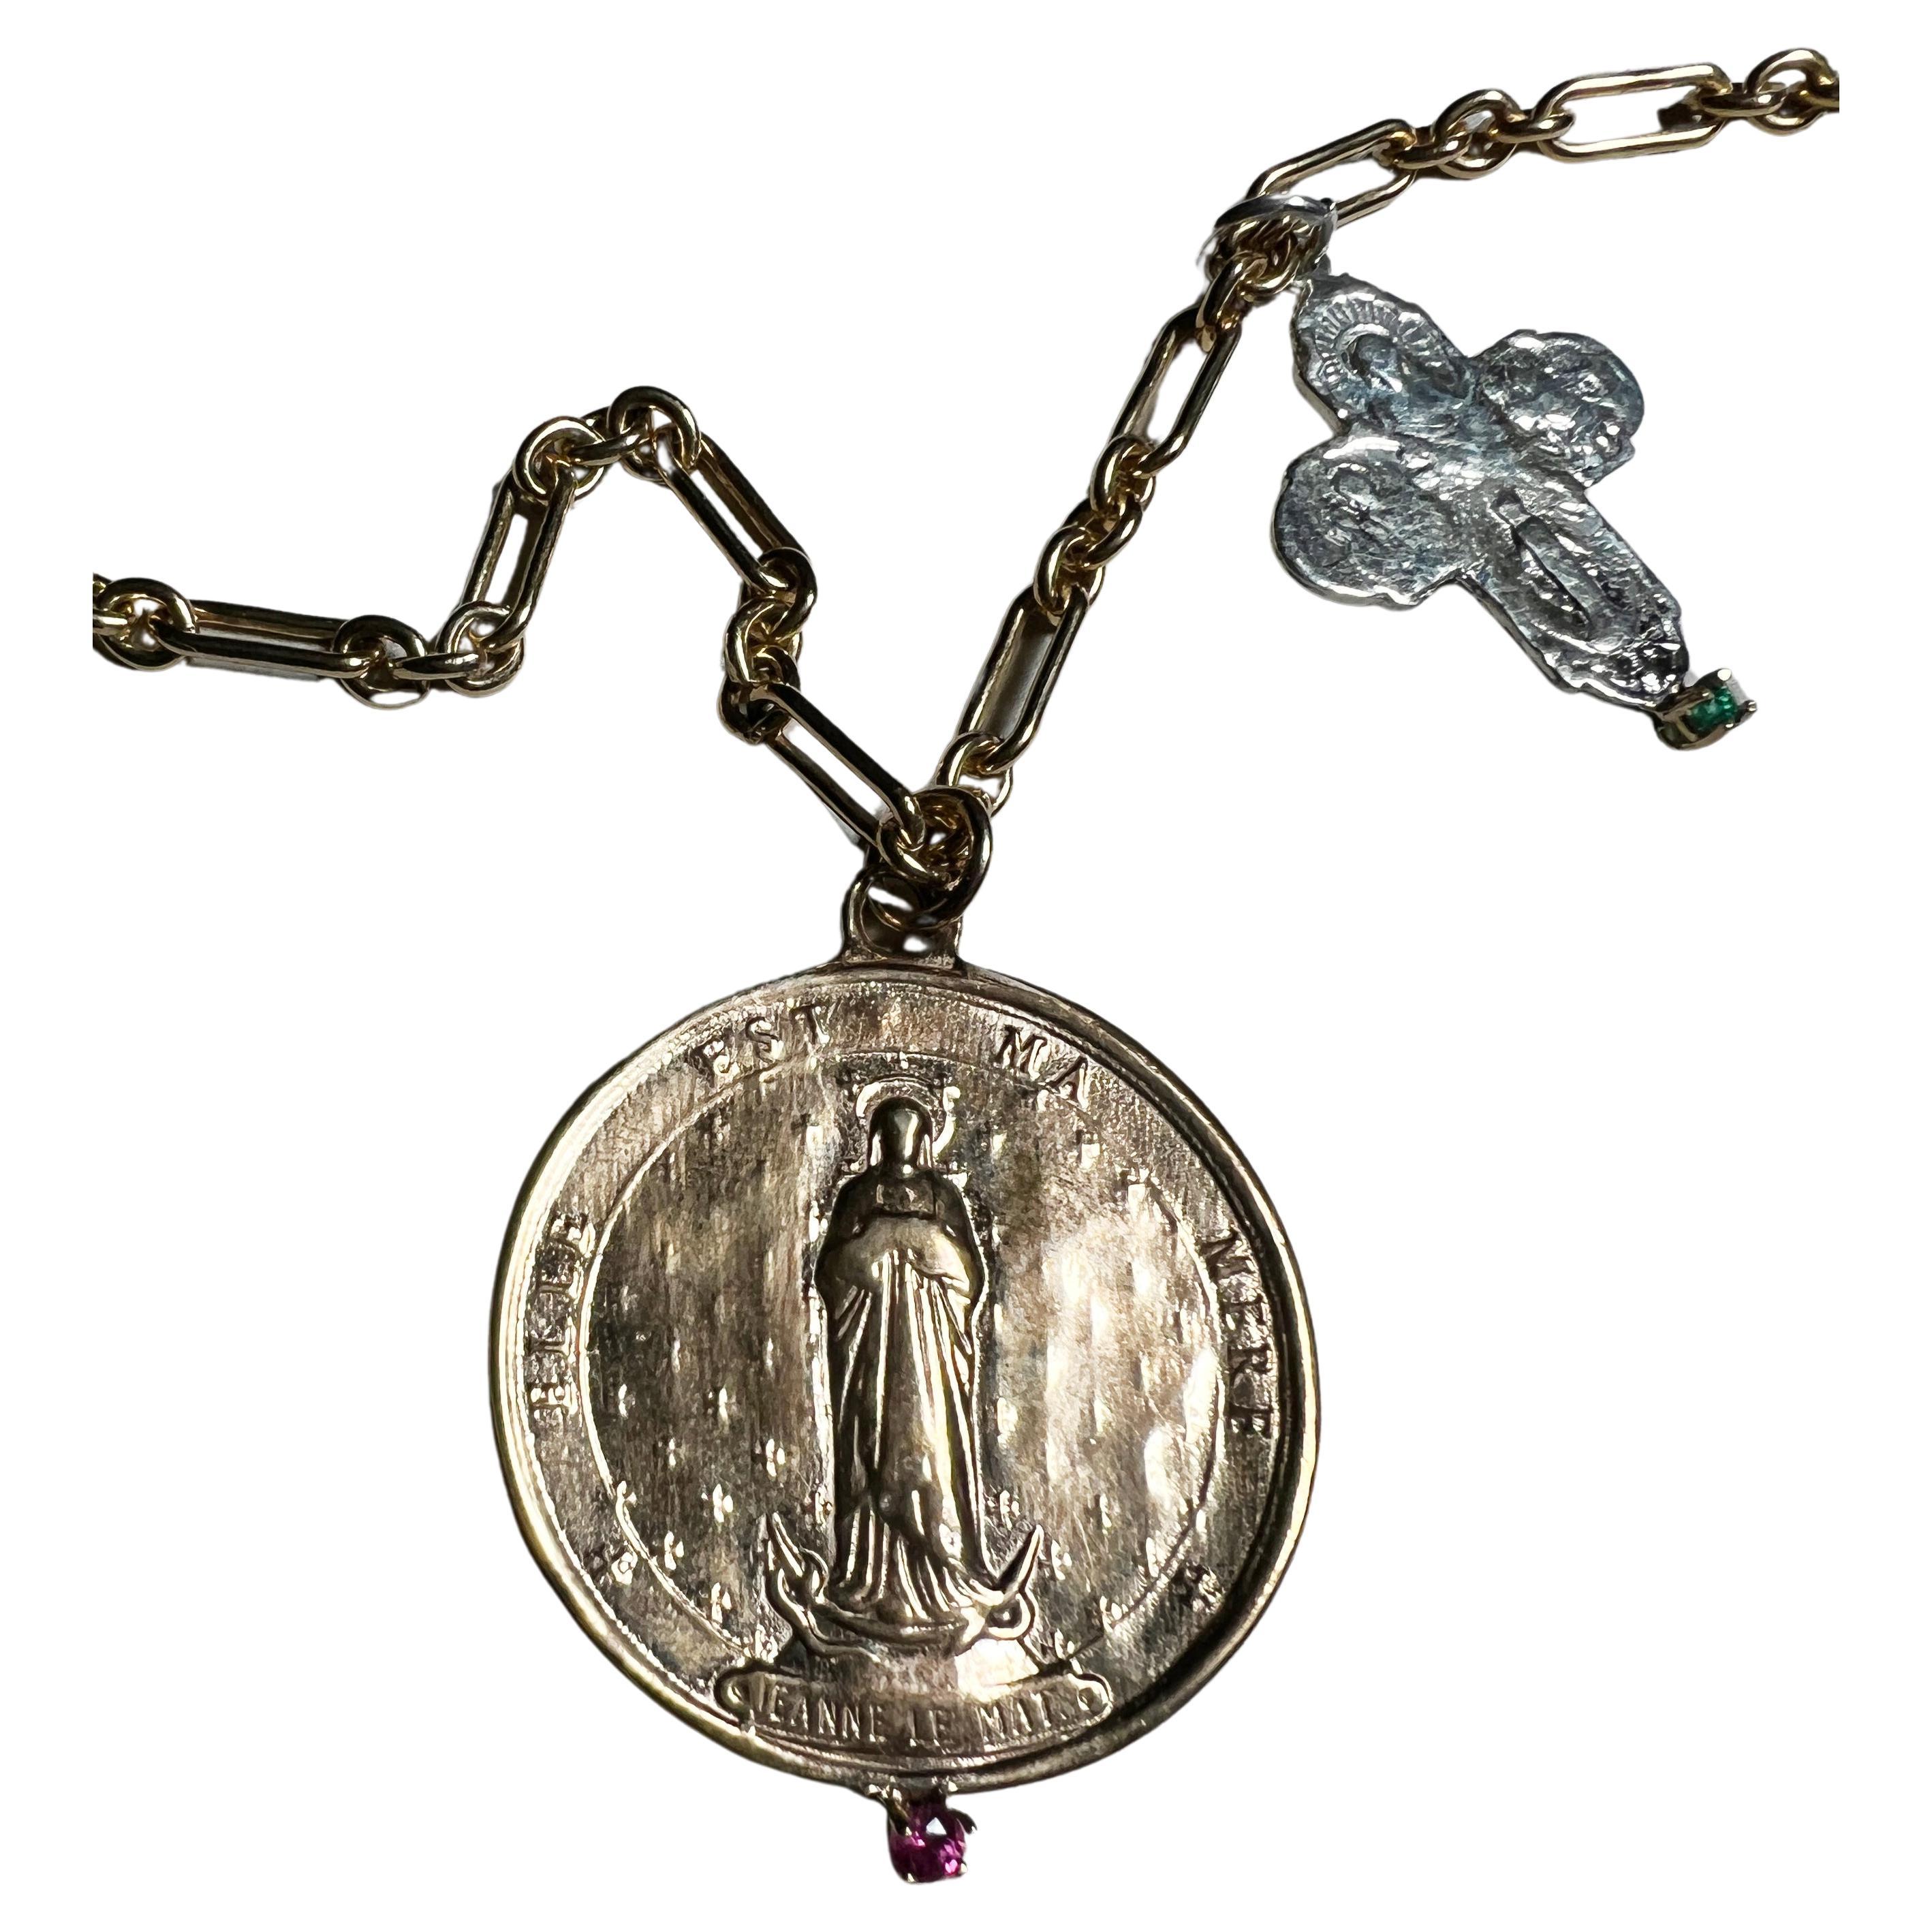 Smaragd Silber Kreuzmedaille Saint Jeanne Le Mat Halskette Gold gefüllte Kette